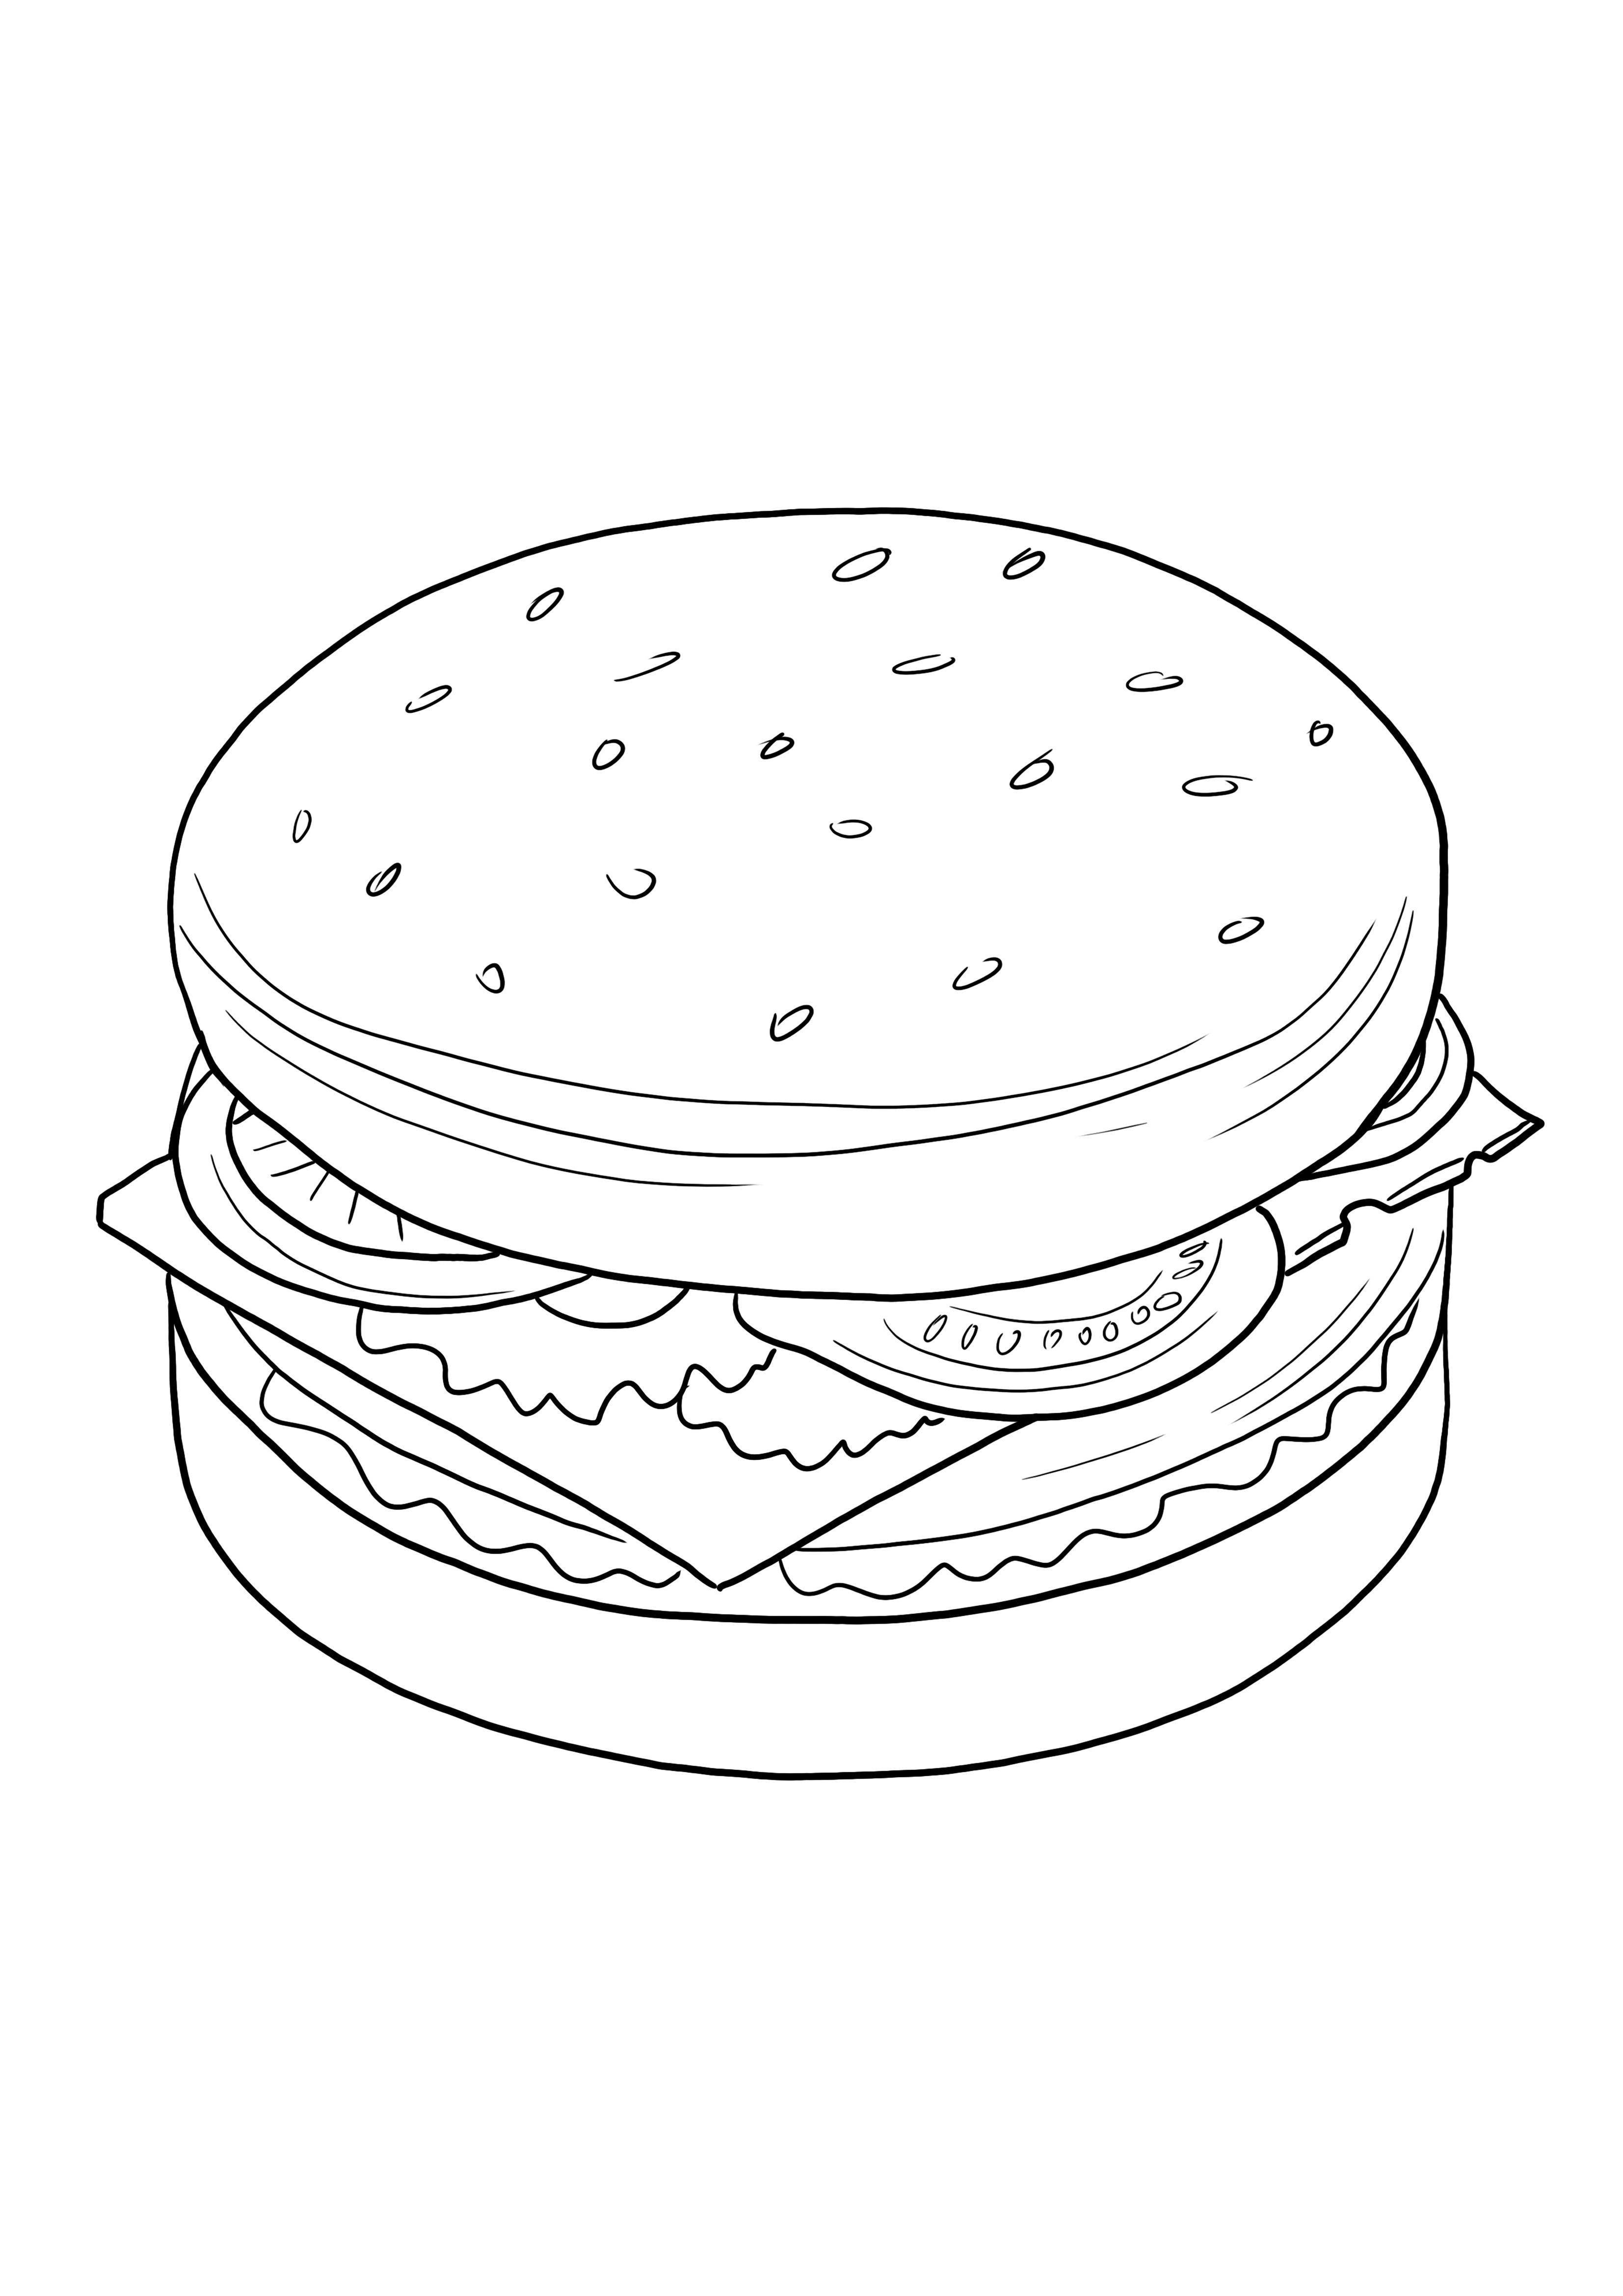 Her yaştan çocuklar için çizburger ücretsiz baskı ve renkli resim